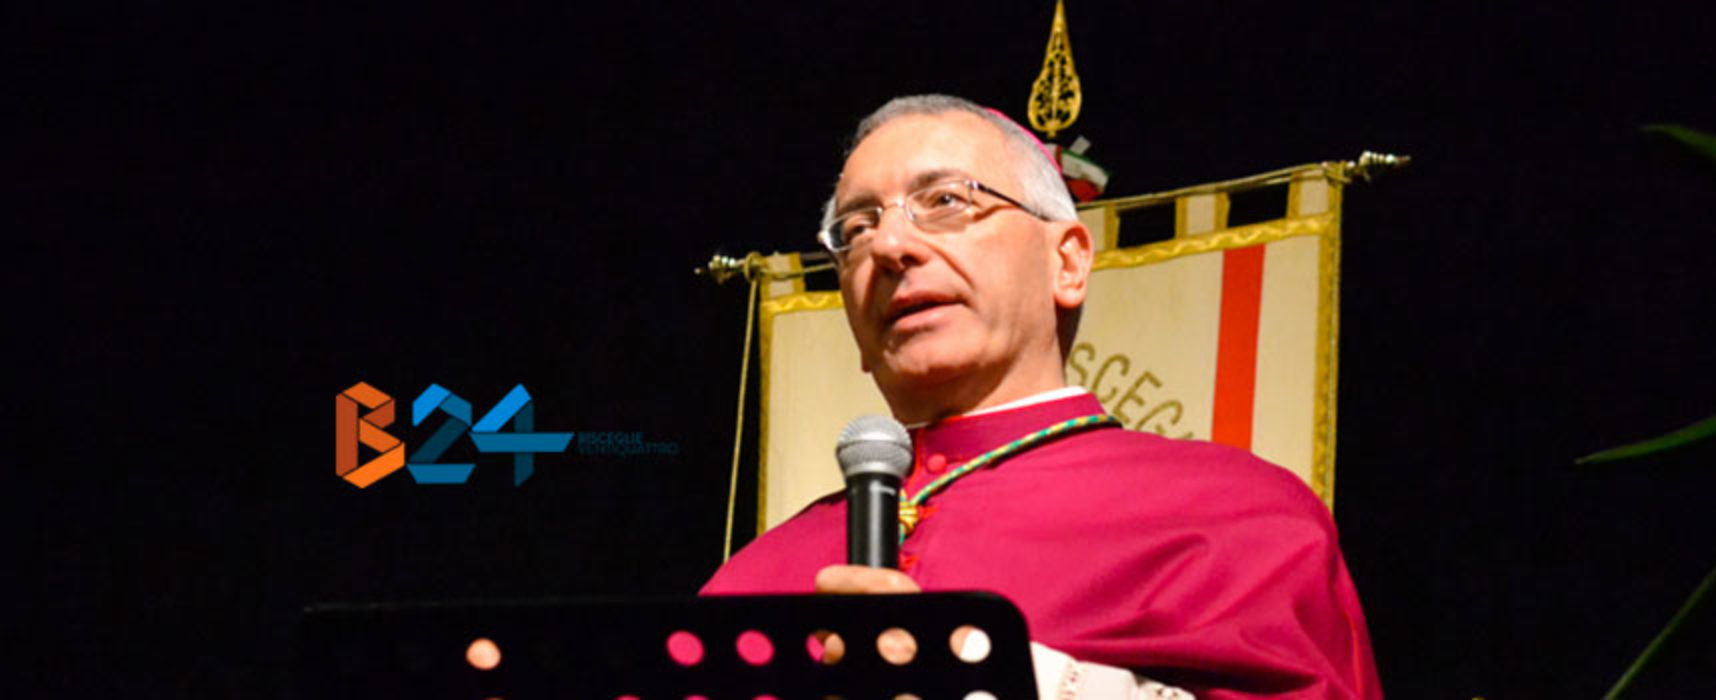 Riti pasquali, Mons. D’Ascenzo: “Comitati organizzatori valutino tutto attentamente”